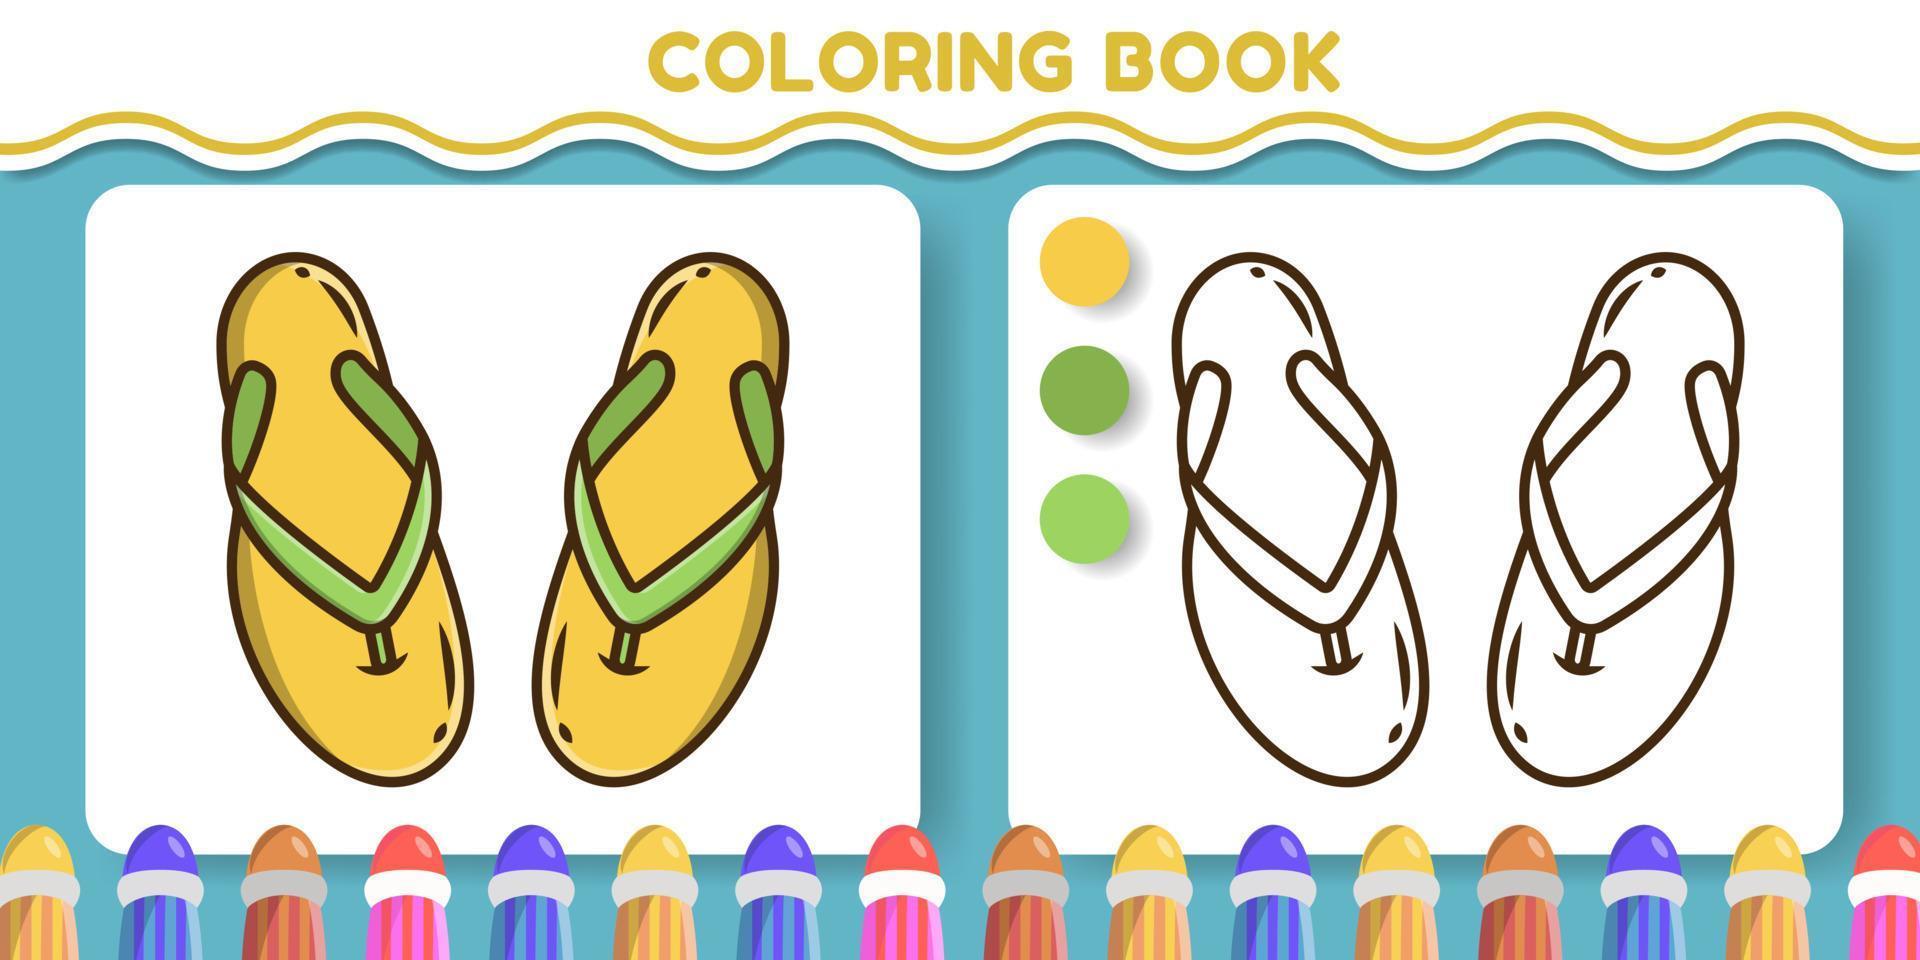 pantofole colorate e bianche e nere libro da colorare di doodle del fumetto disegnato a mano per i bambini vettore